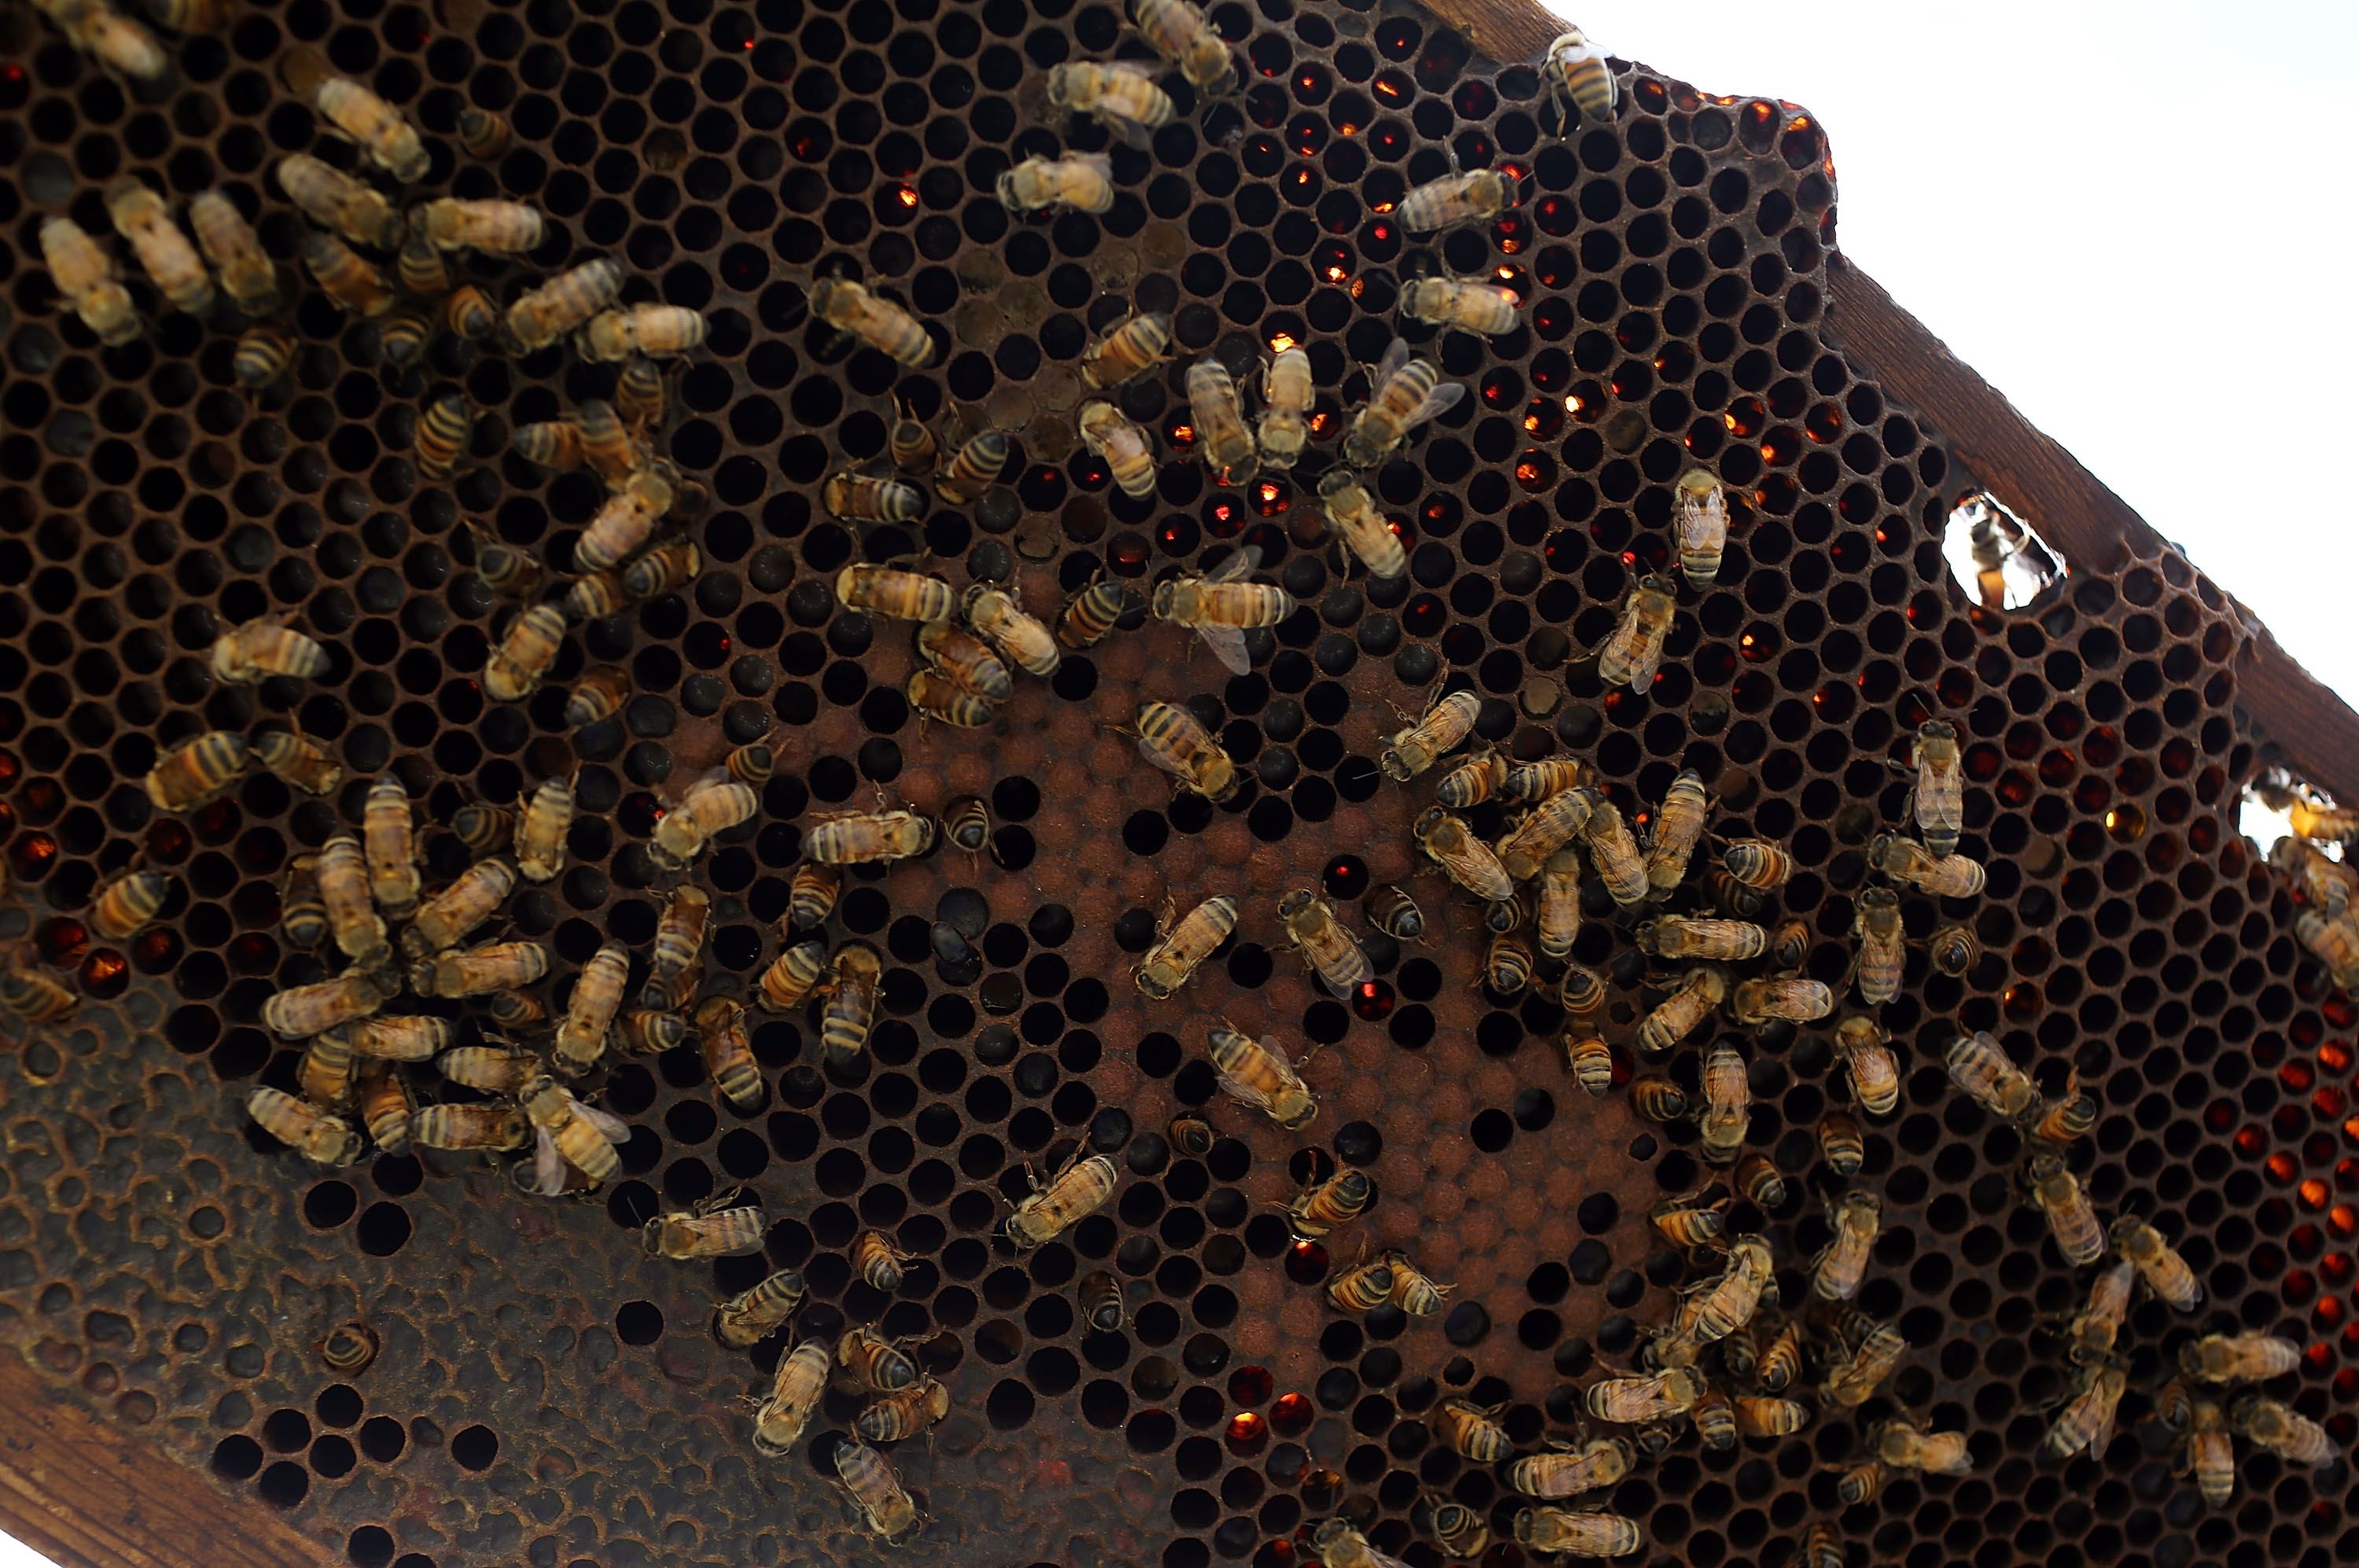 Baby Bees - Where are They? - Carolina Honeybees